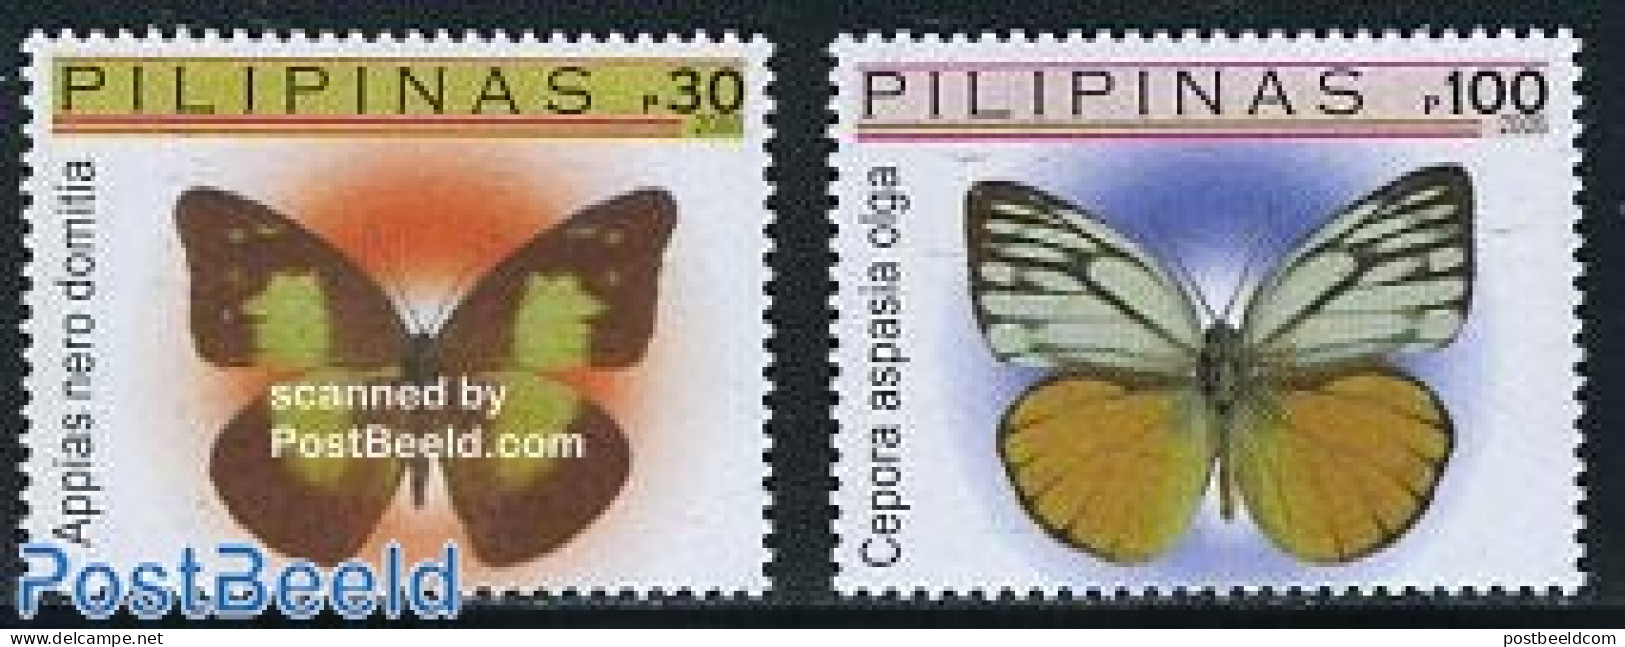 Philippines 2006 Definitives, Butterflies 2v, Mint NH, Nature - Butterflies - Filipinas